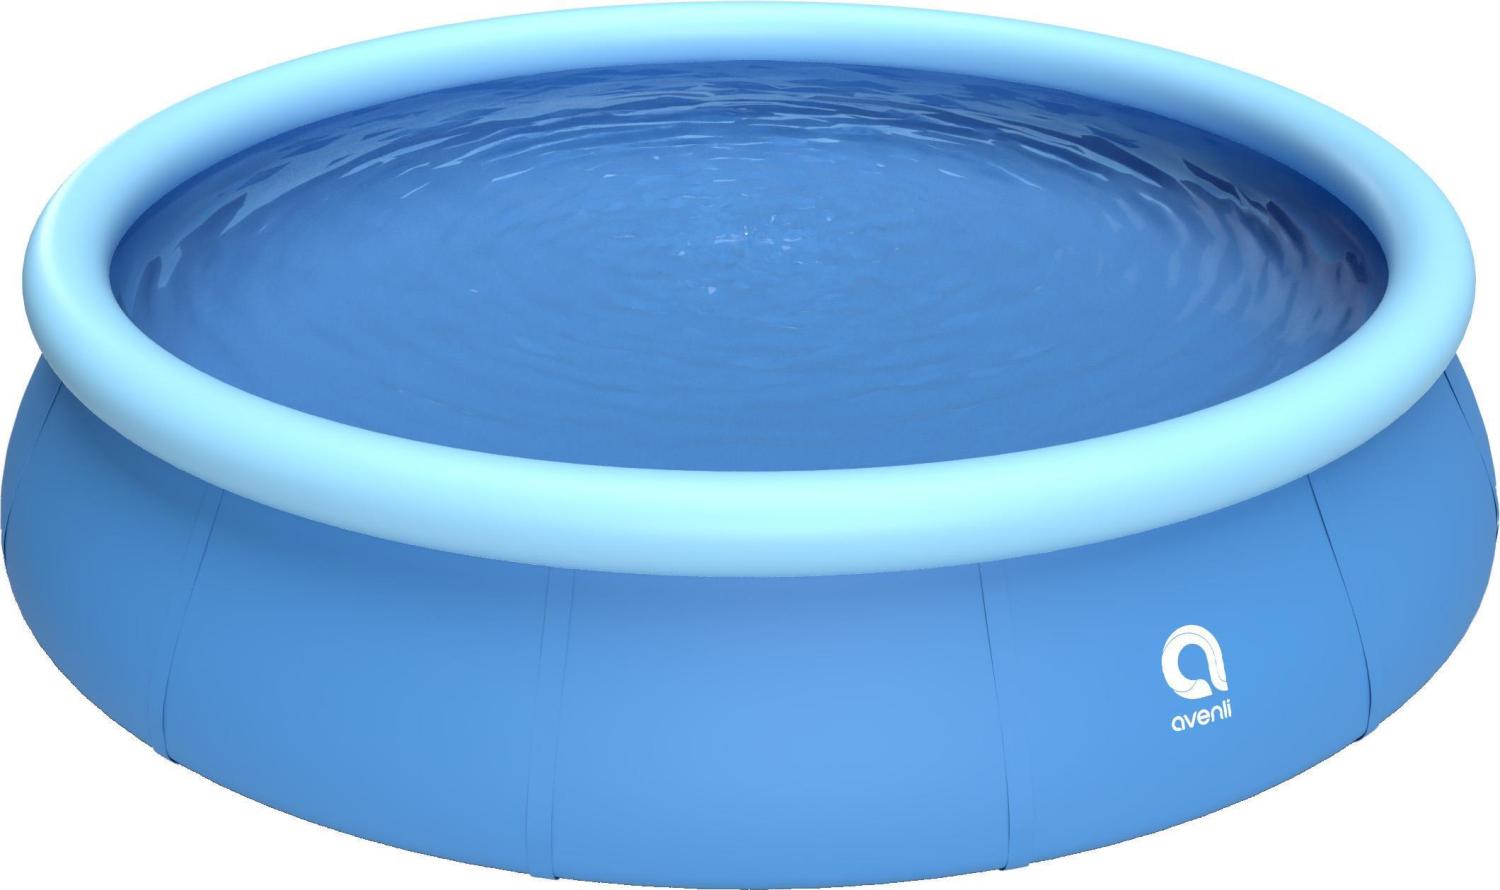 Avenli Prompt Set 420 x 84 cm Pool, ohne Zubehör, blau Bild 1